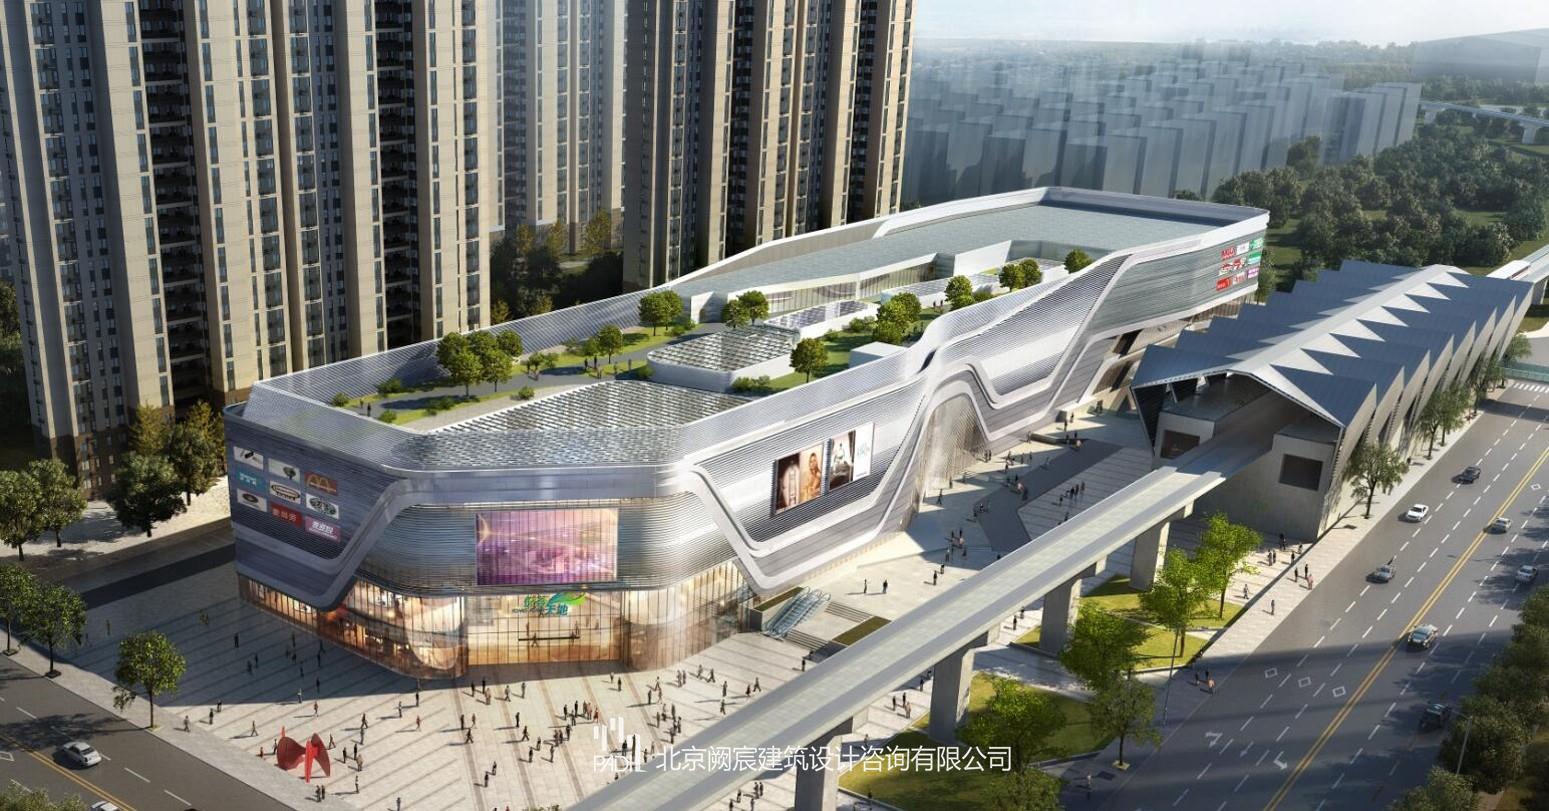 BIM技术在青岛中建锦绣城A地块5#集中商业项目上的应用